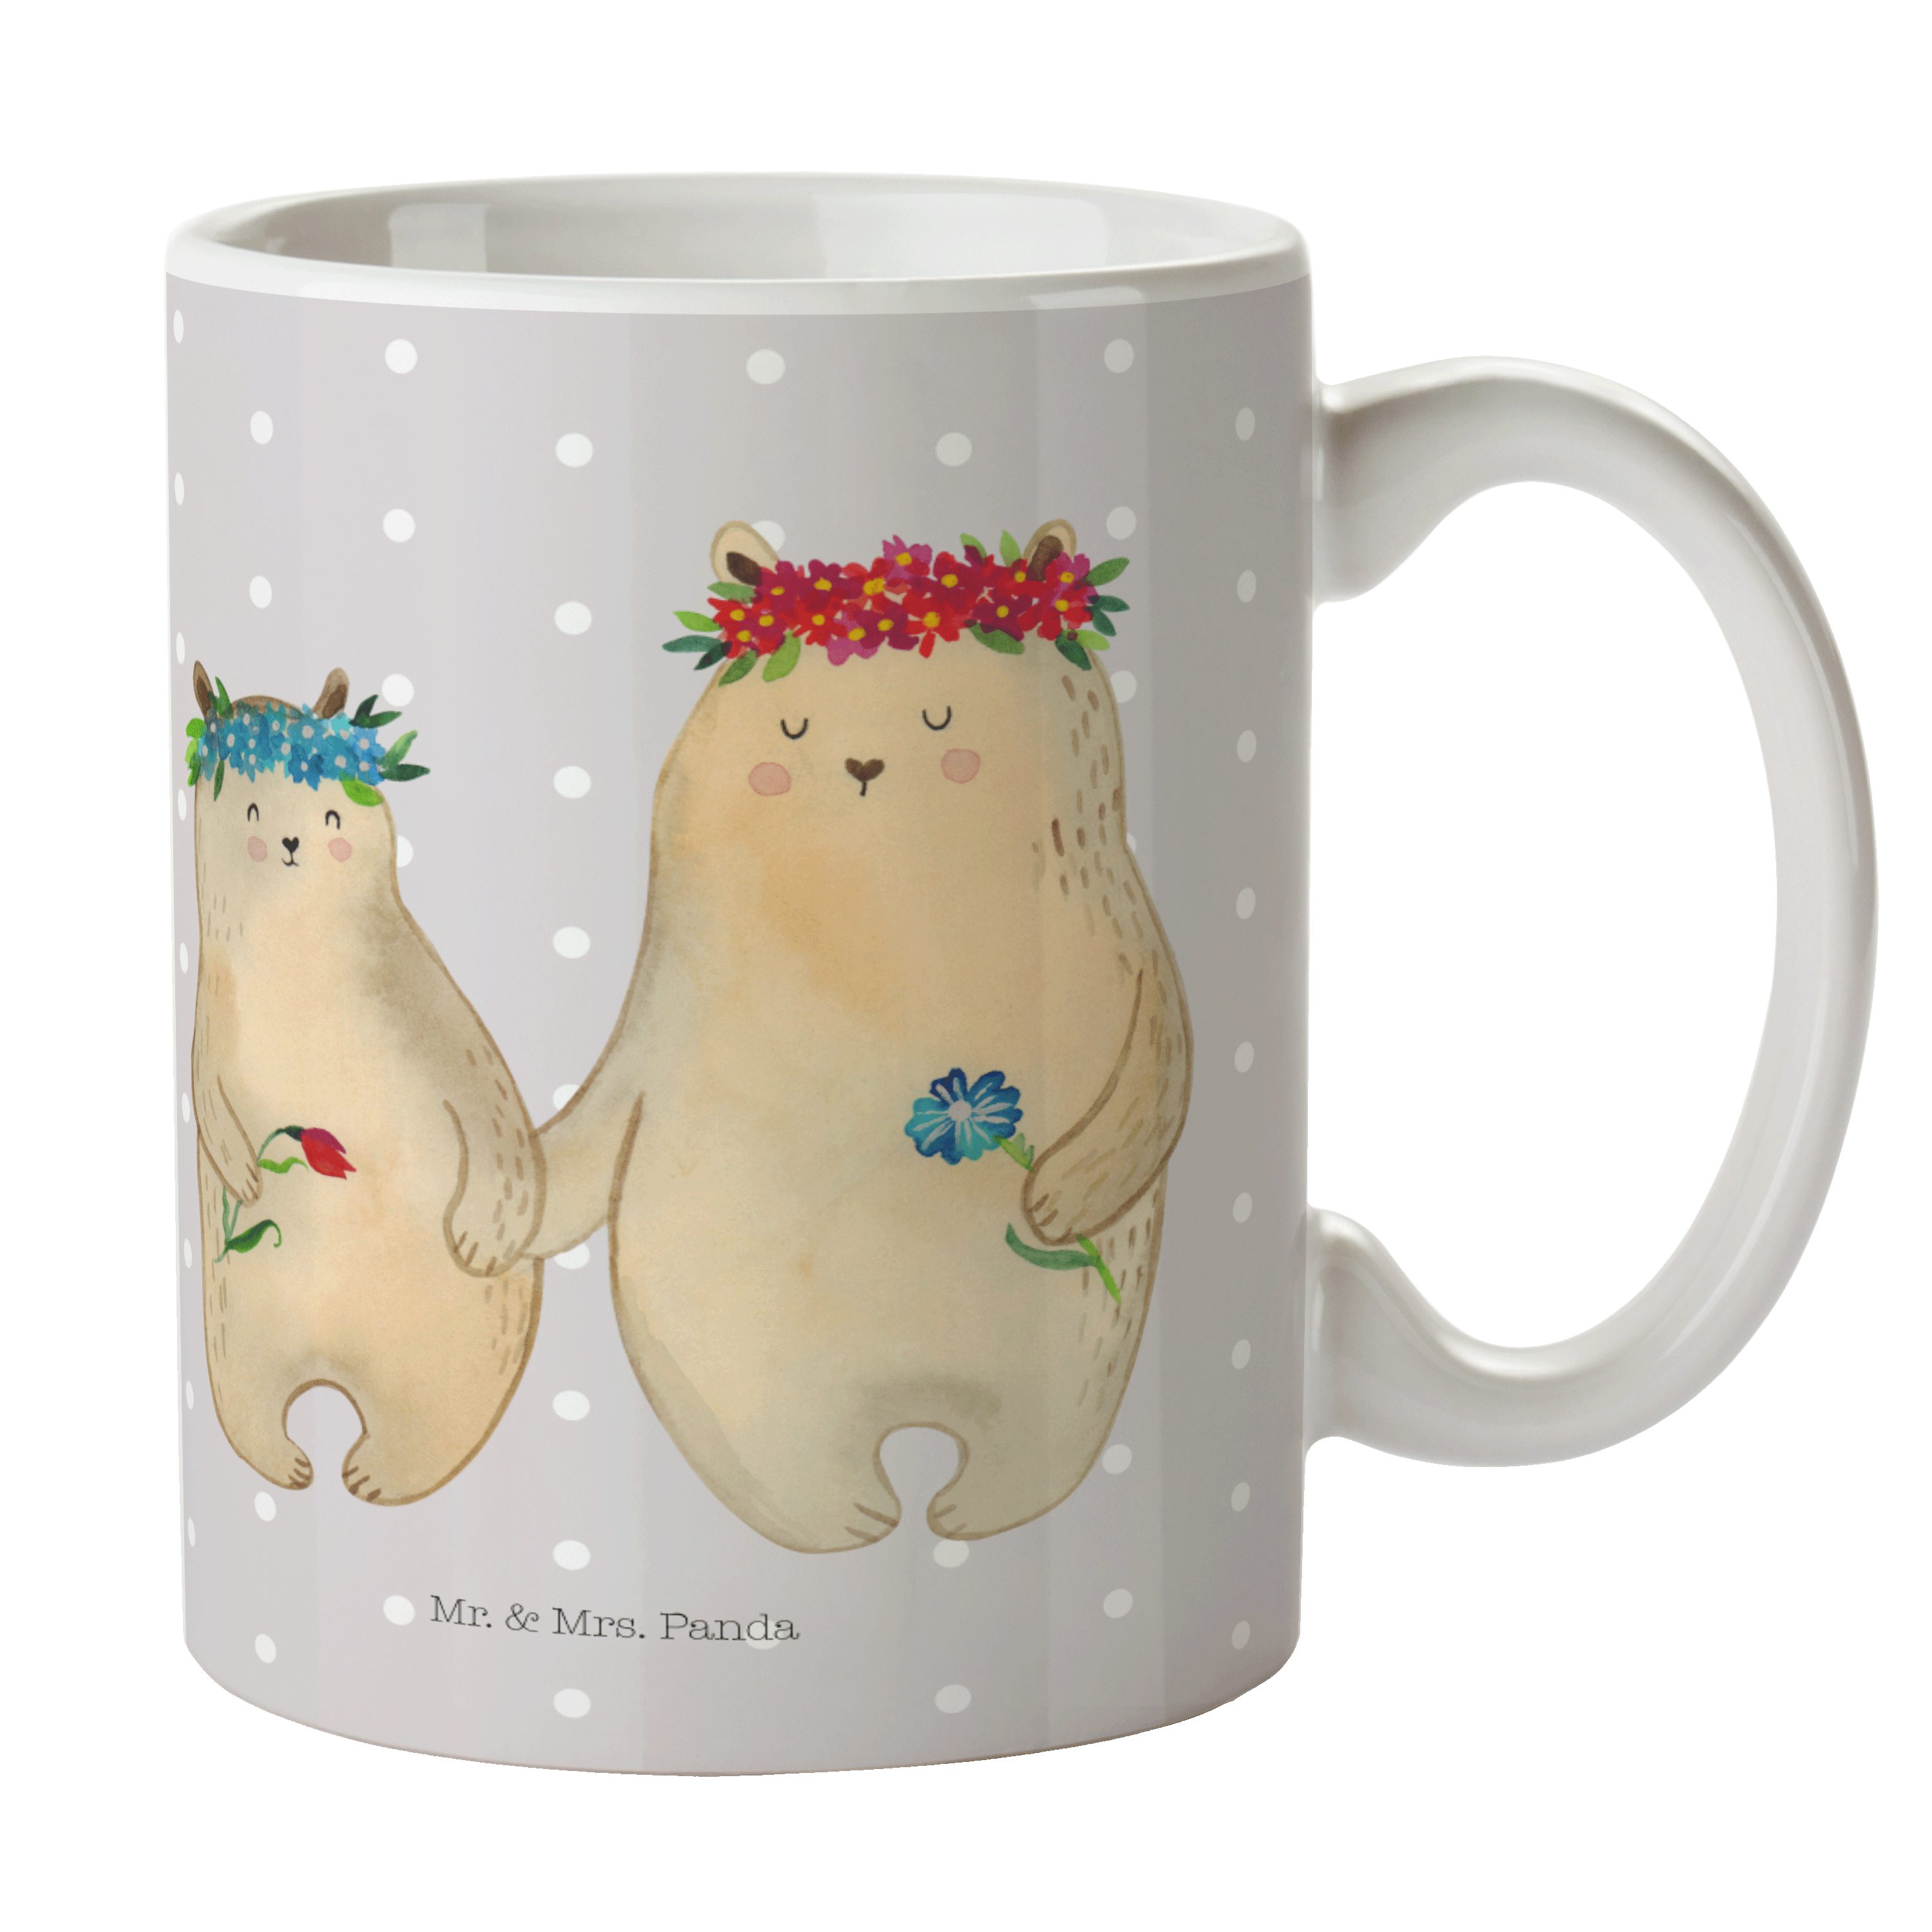 Mr. & Mrs. Panda Tasse Bären mit Blumenkranz - Grau Pastell - Geschenk, Bruder, Kaffeebecher, Keramik